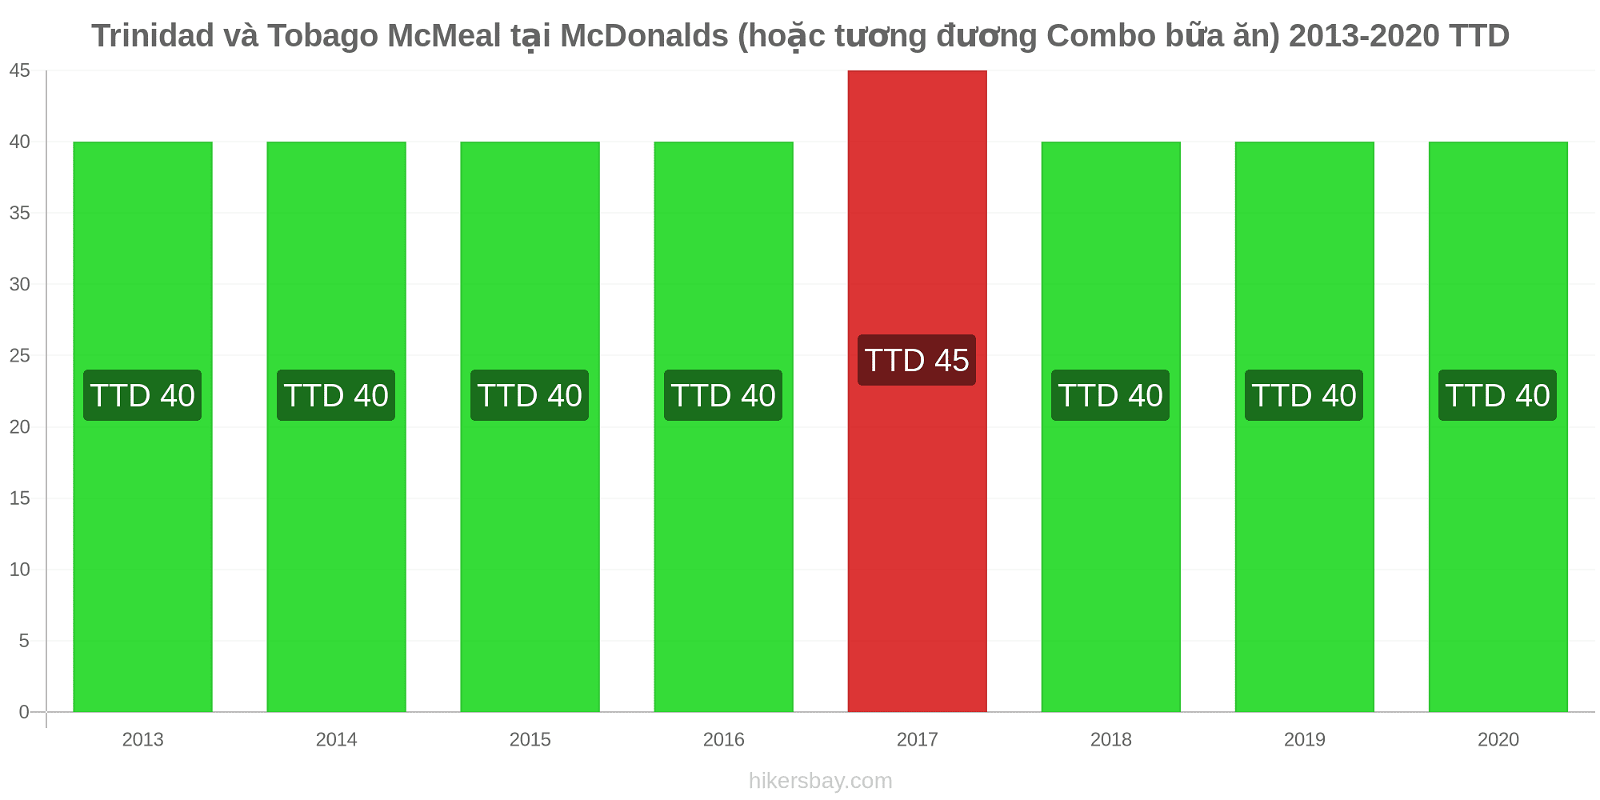 Trinidad và Tobago thay đổi giá McMeal tại McDonalds (hoặc tương đương Combo bữa ăn) hikersbay.com